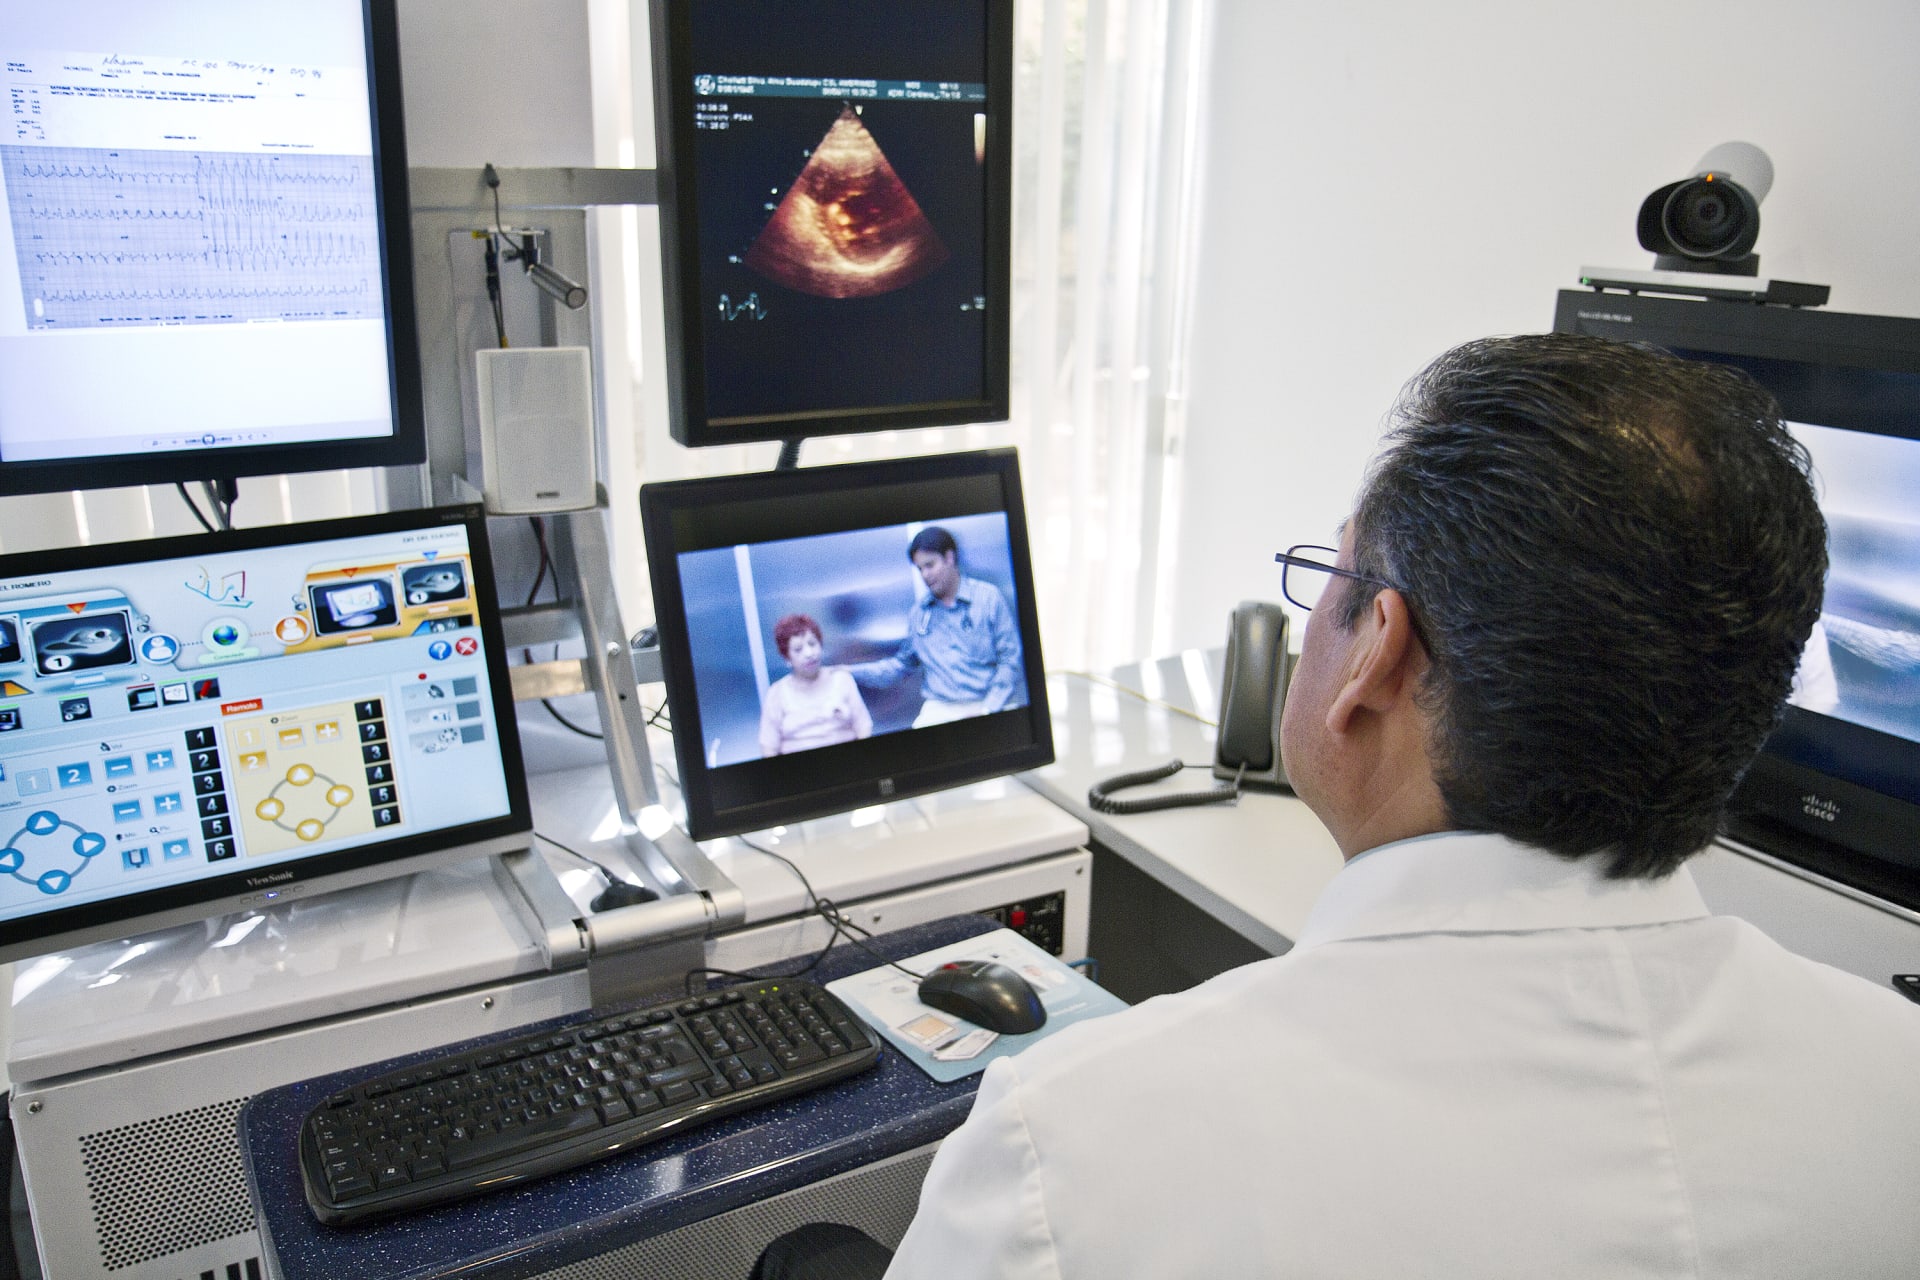 Lékař poskytuje konzultaci nejen telefonicky, ale může využít i obrazového spojení s pacientem přes počítač. (iluastrační foto: Wikimedia)